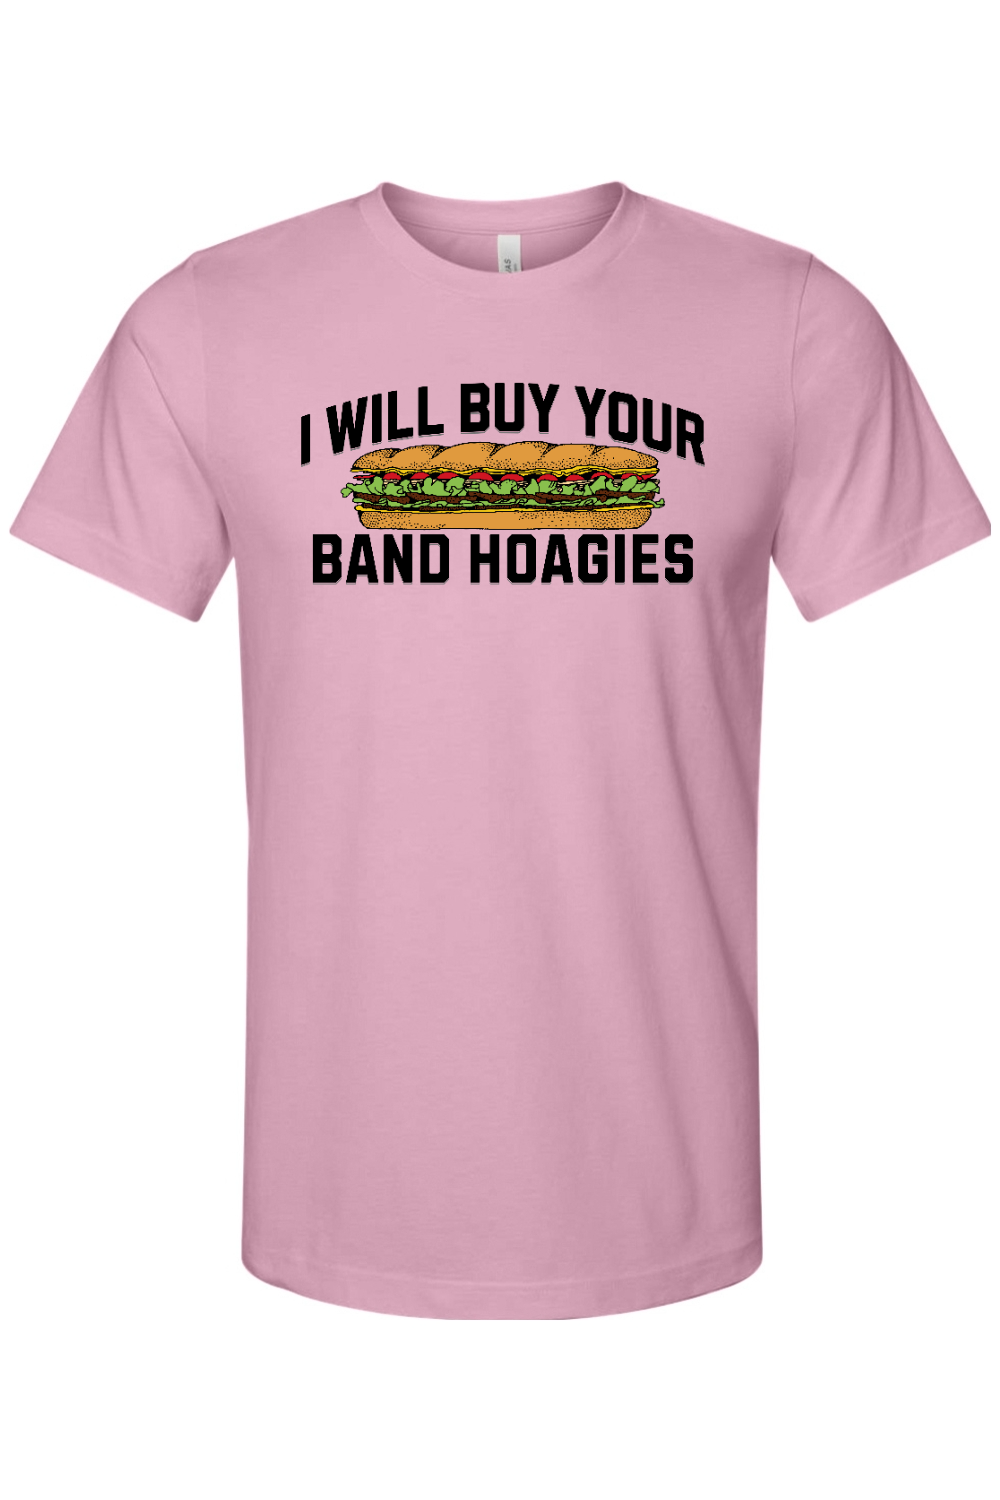 I Buy Band Hoagies - Yinzylvania